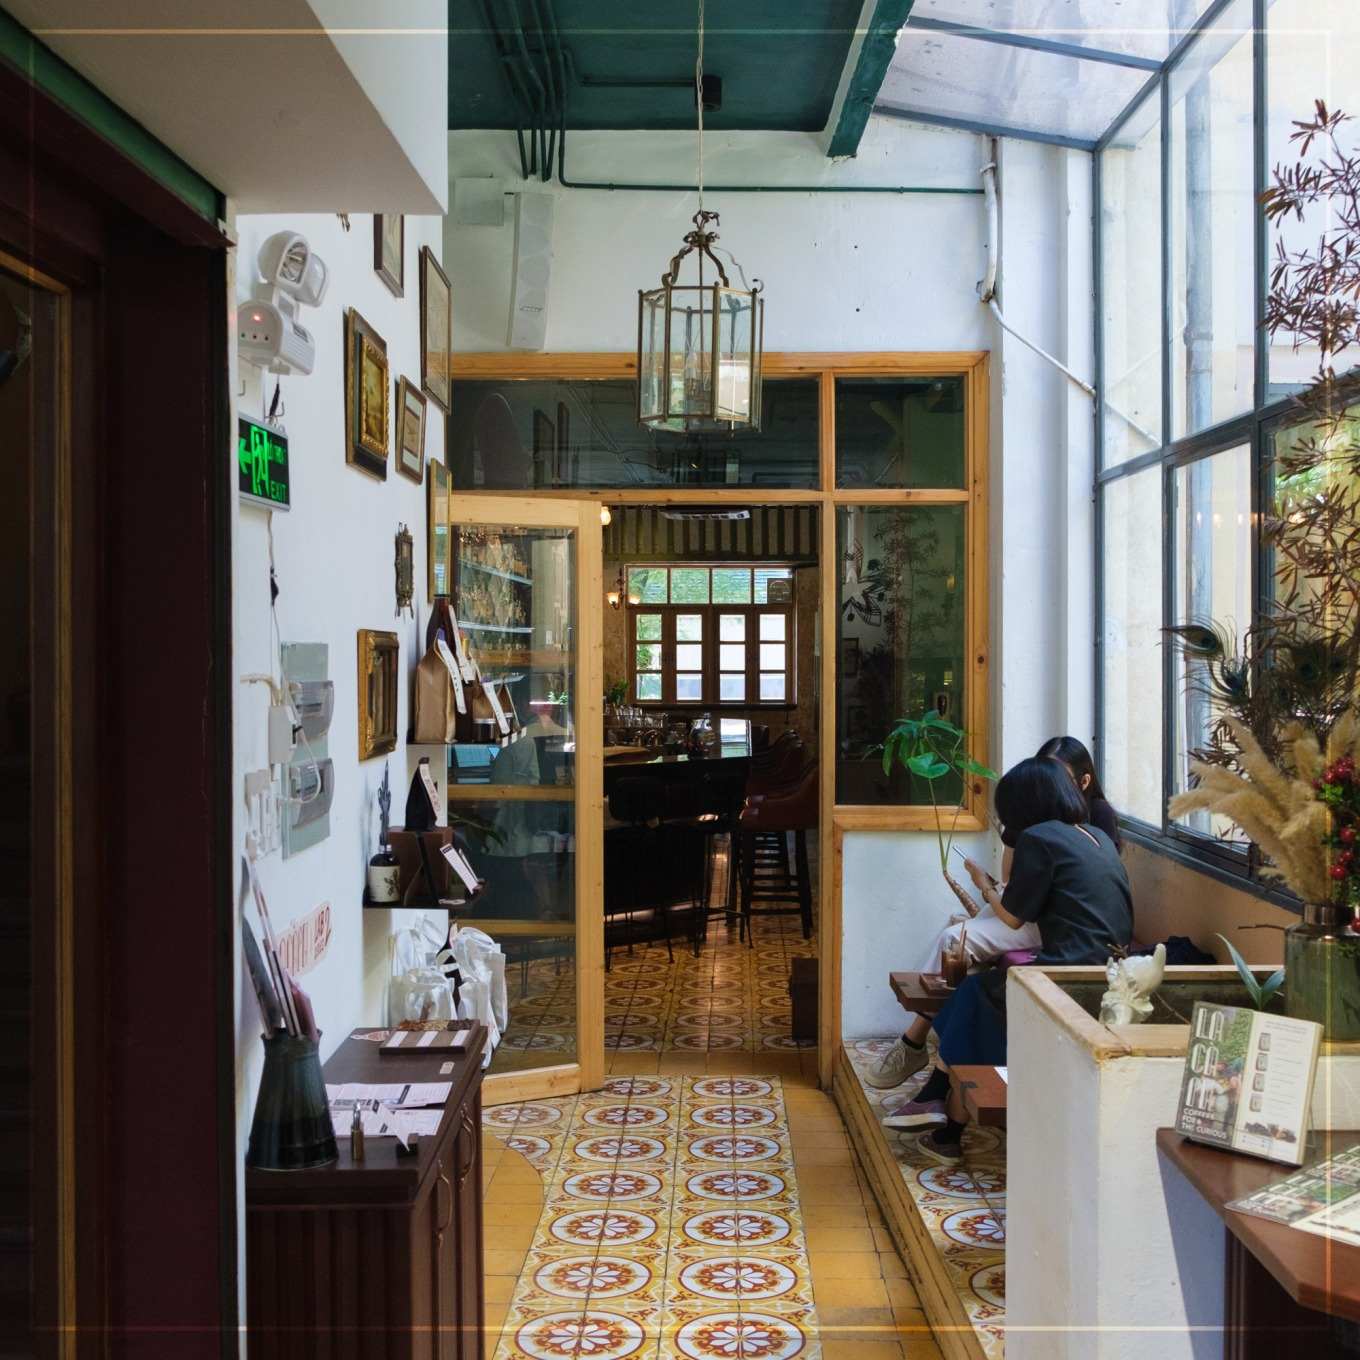 Кофейня Lacàph отличается современной атмосферой с оттенком старинной эстетики, которая видна в узорчатой напольной плитке. Фото: Lacàph